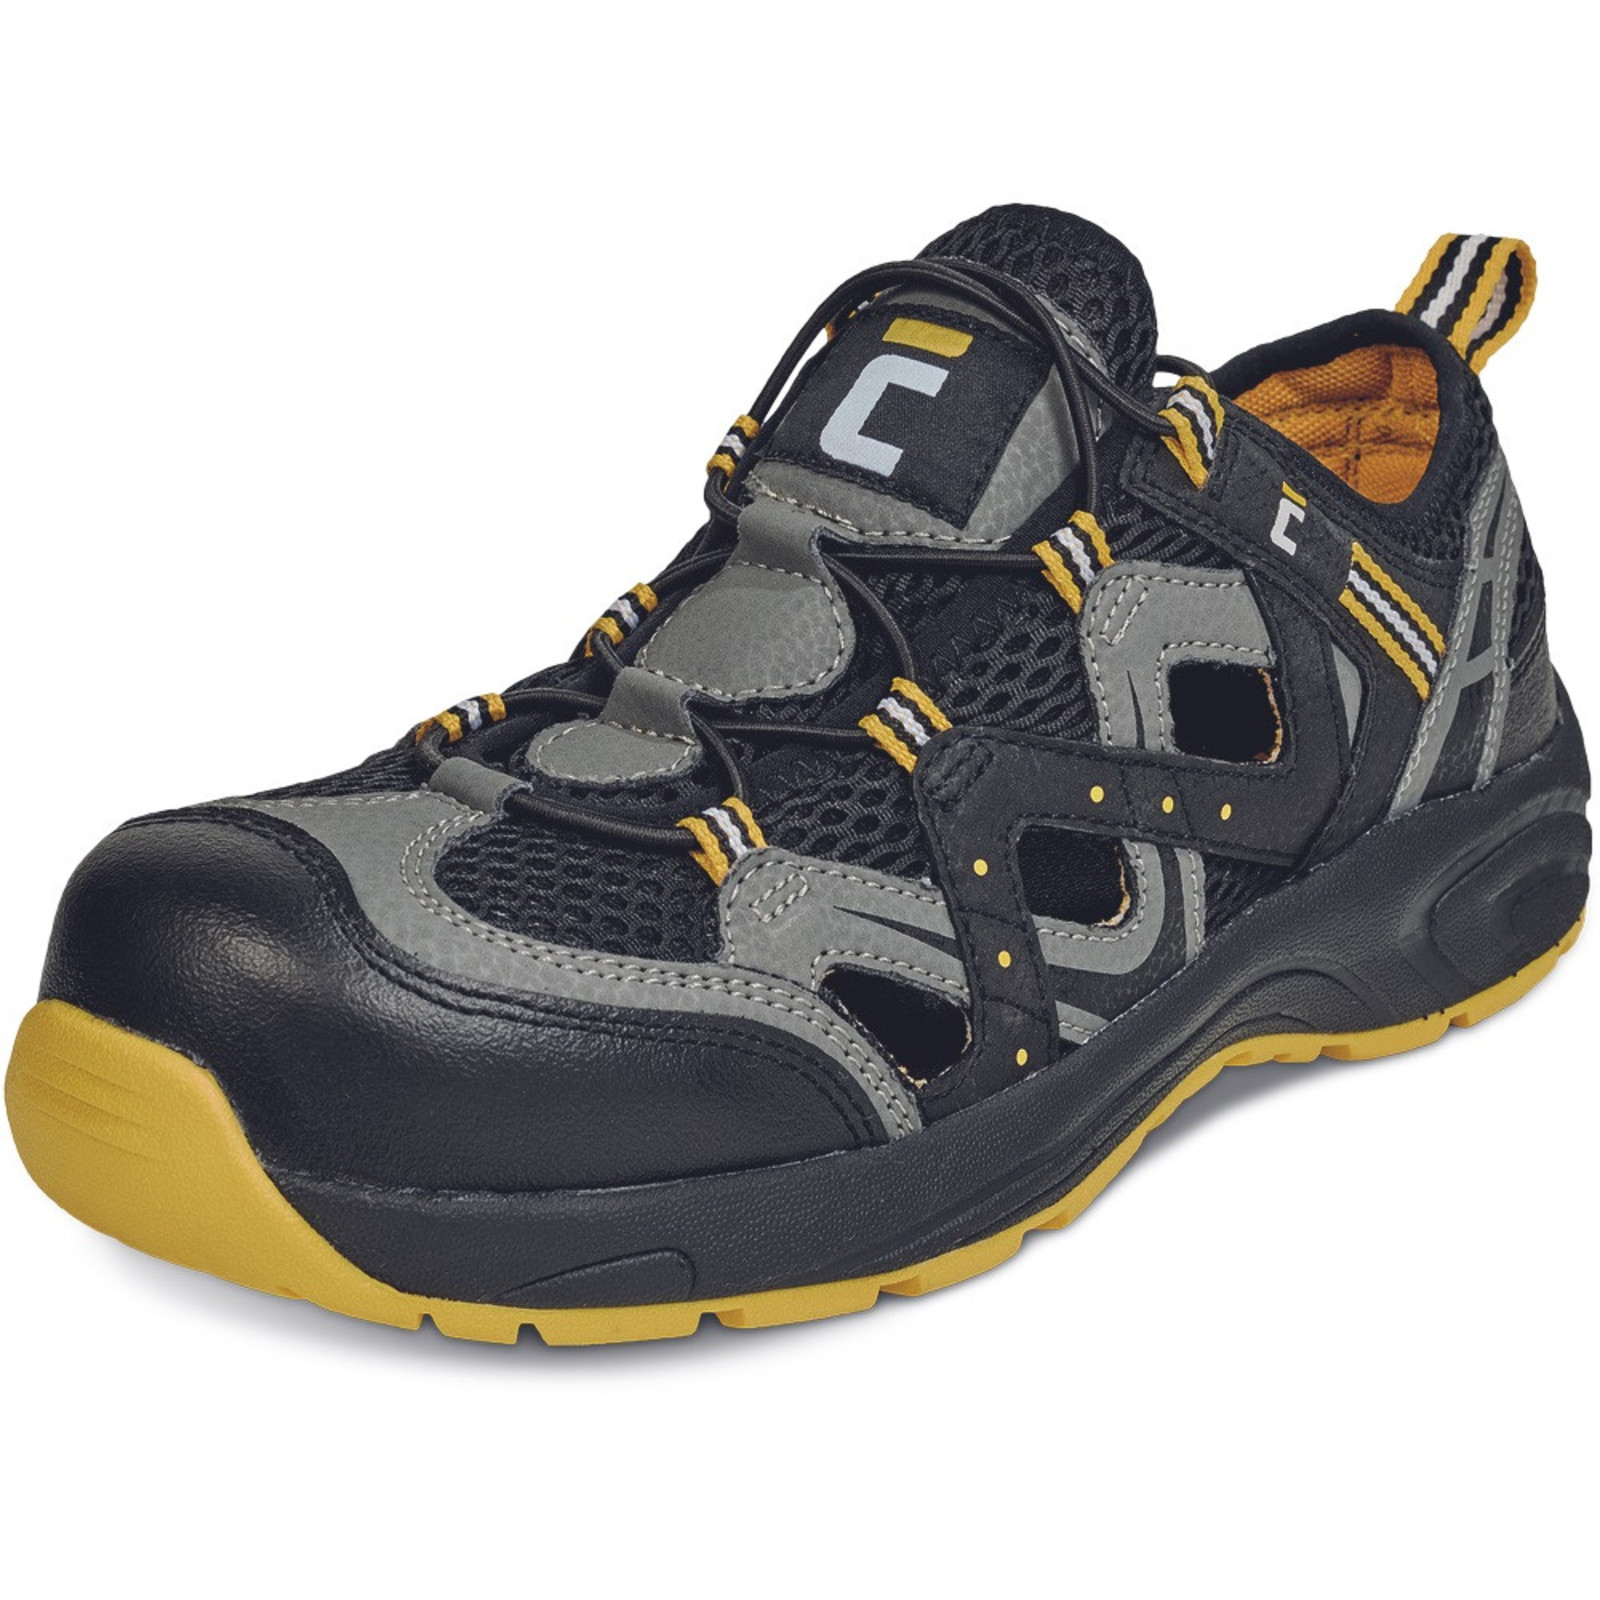 Bezpečnostné sandále Cerva Henford MF S1 SRC - veľkosť: 44, farba: čierna/žltá